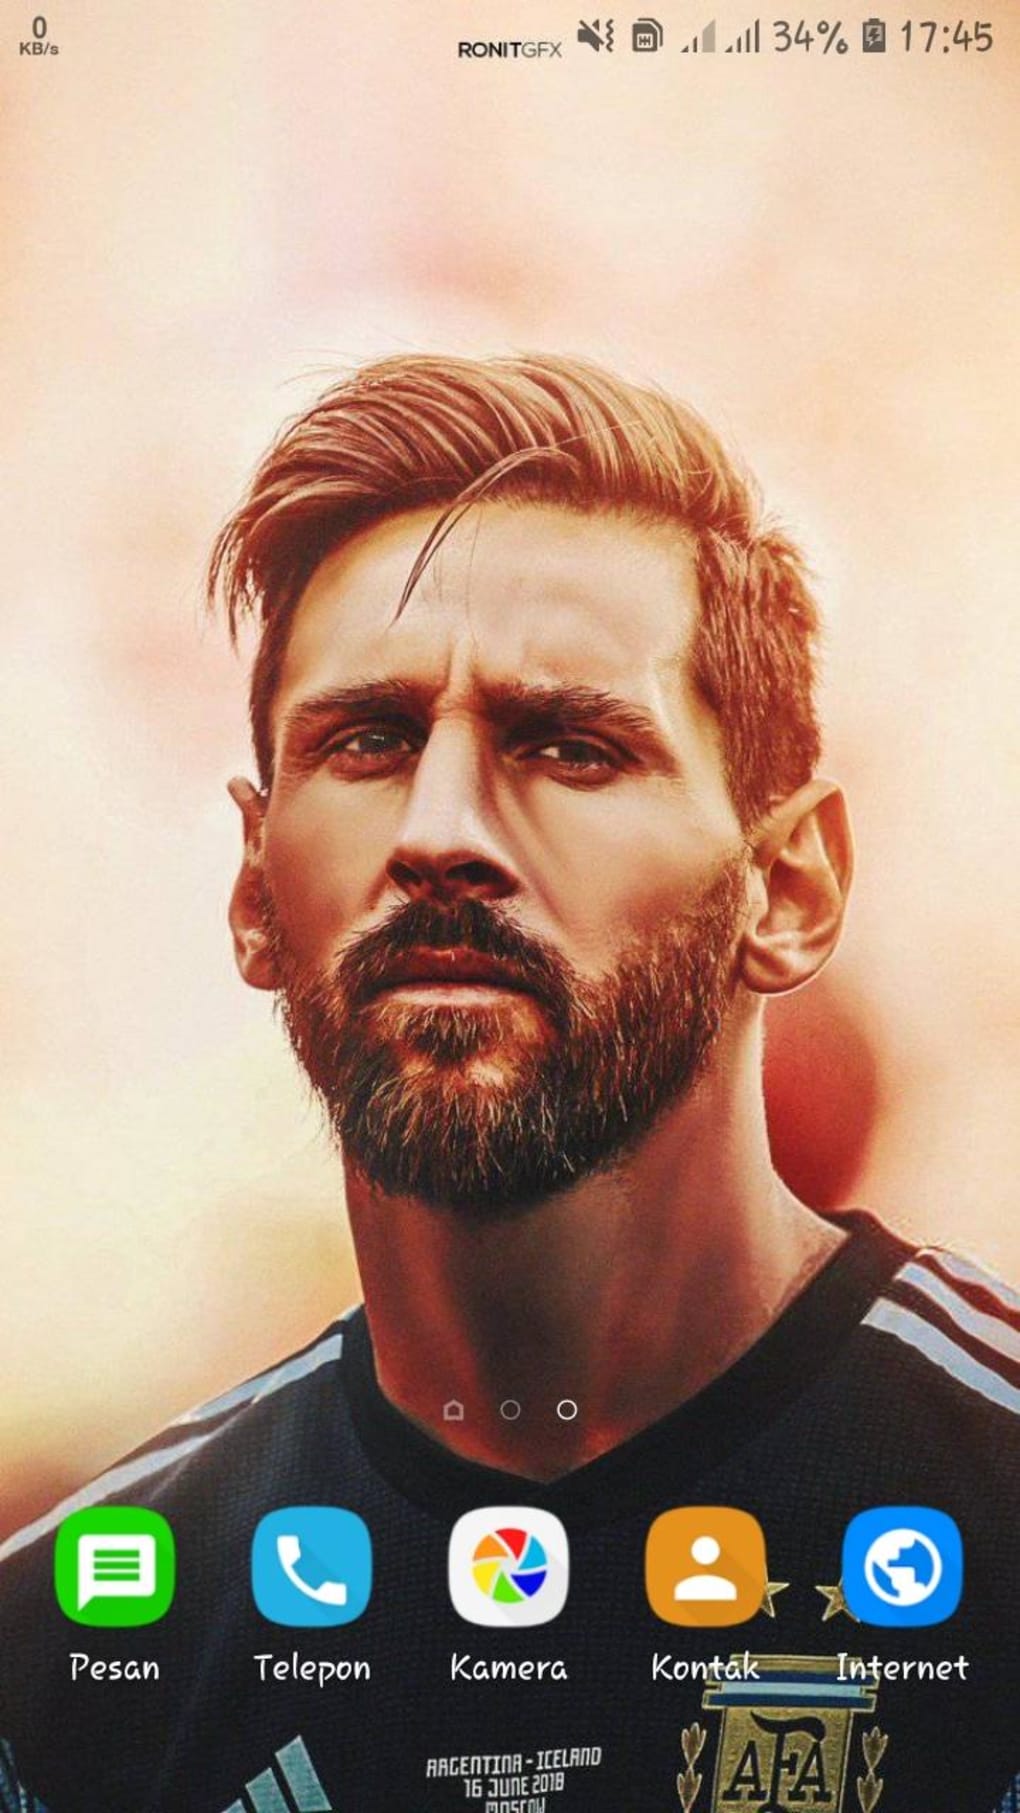 Lionel Messi Wallpaper HD 2022: Nếu bạn là một fan hâm mộ của Lionel Messi, hẳn là bạn không thể bỏ qua bức ảnh nền HD mới nhất của anh ta! Bức ảnh đó sẽ giúp cho màn hình điện thoại của bạn trở nên đầy sức sống hơn bao giờ hết!